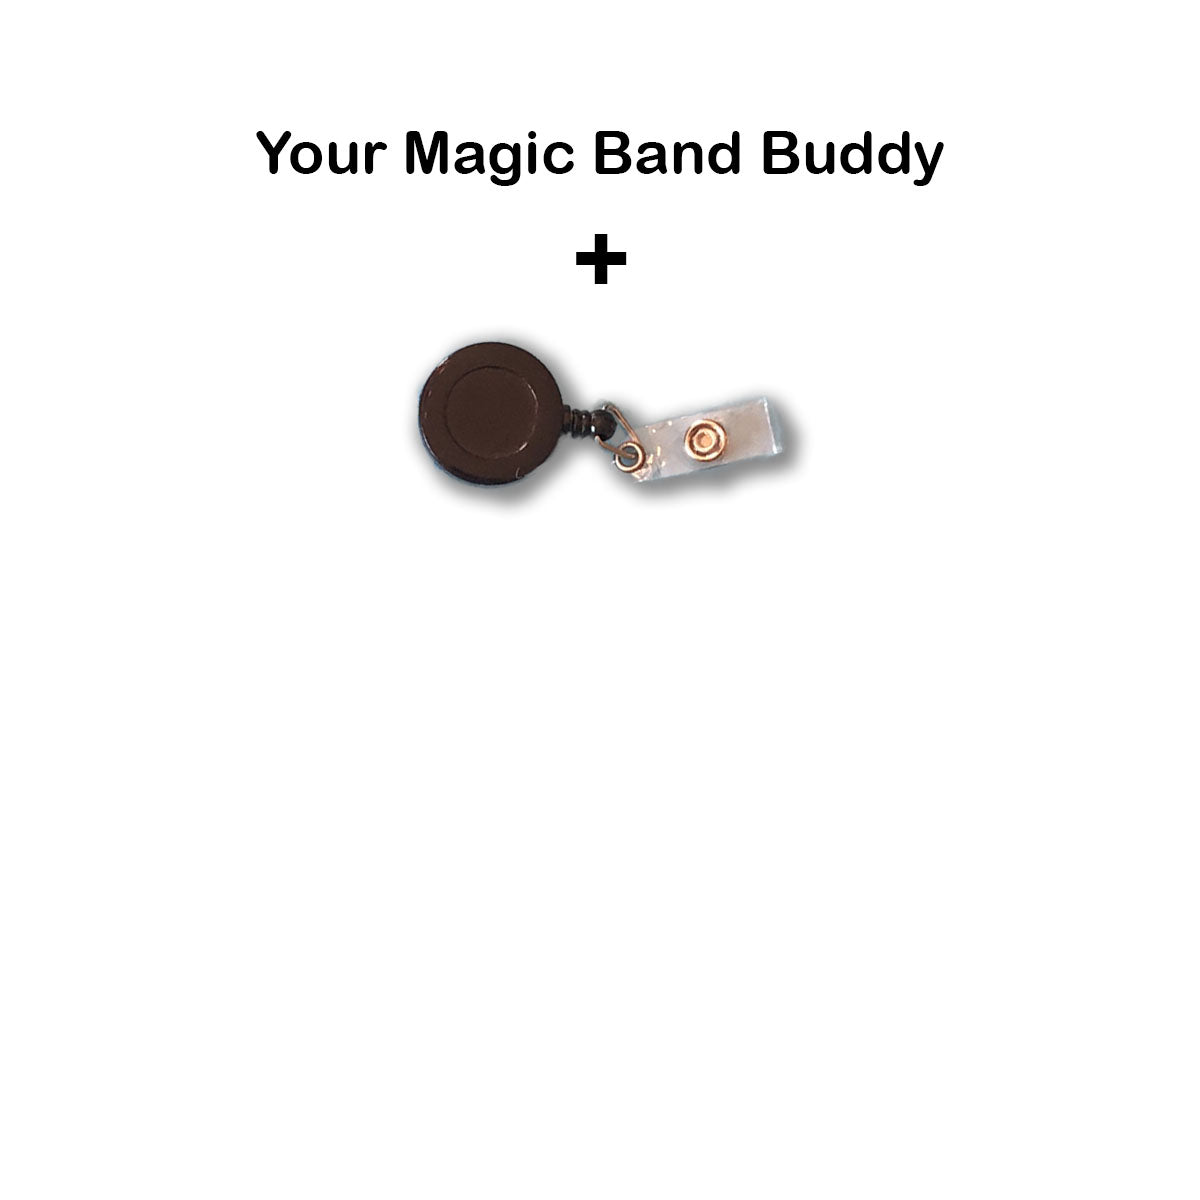 Light Cycle Magic Band Buddy